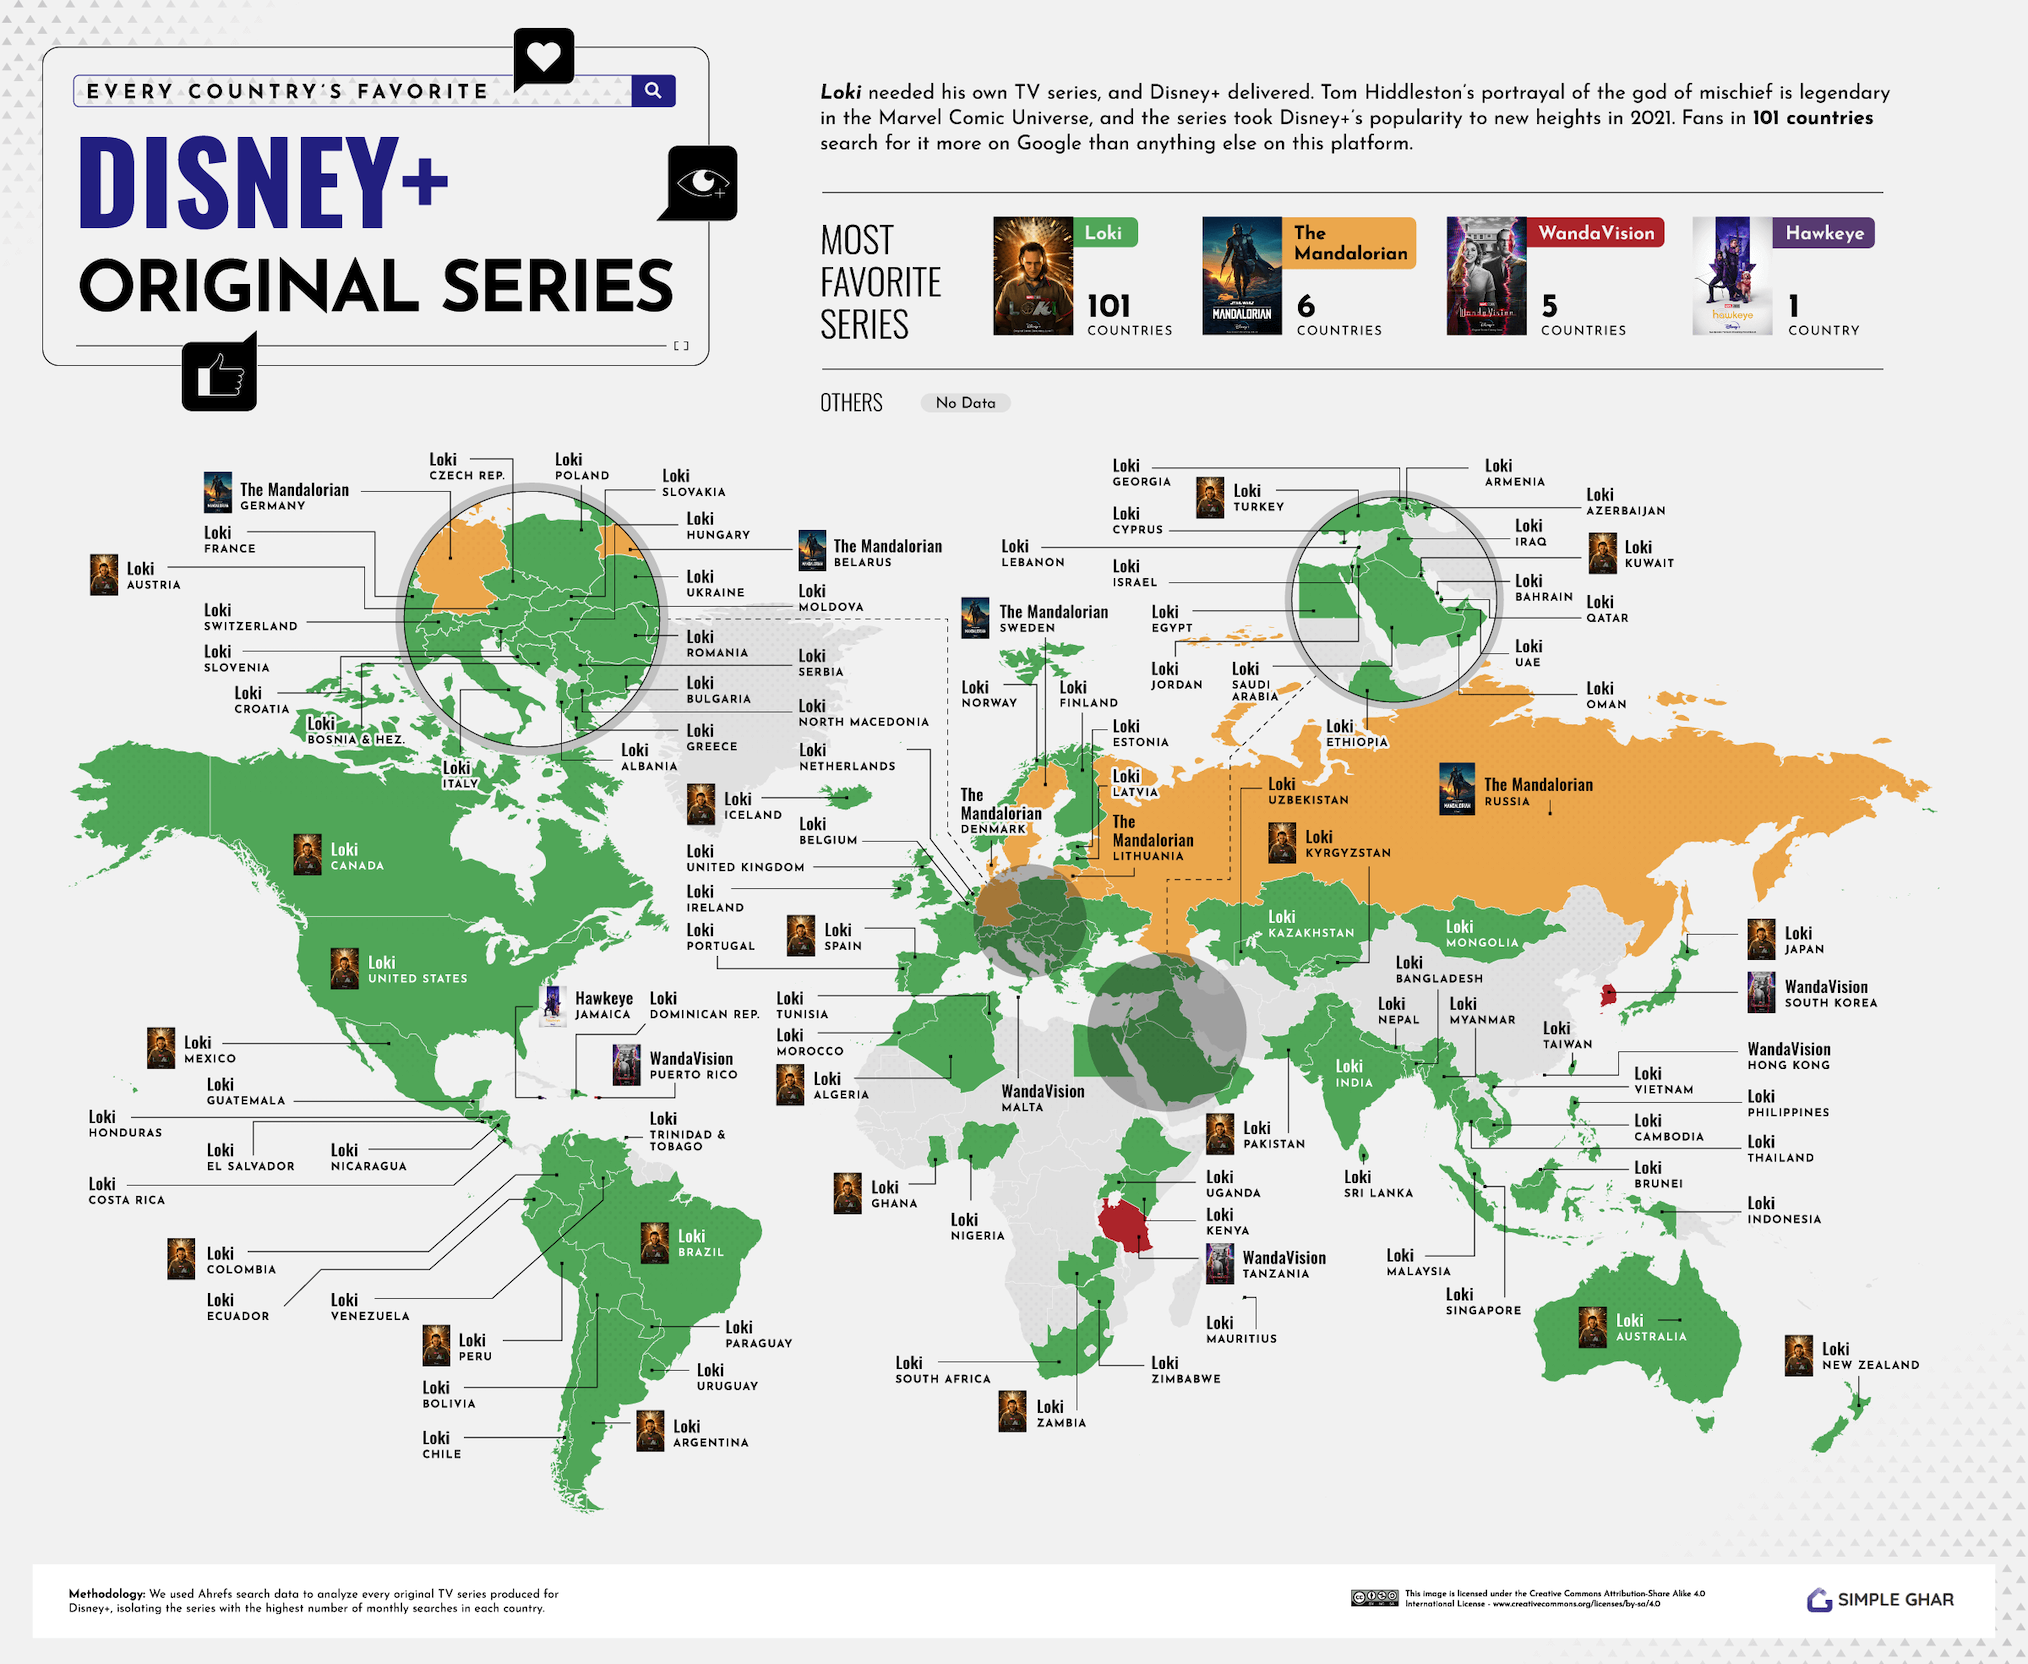 La serie Disney+ favorita de todos los países